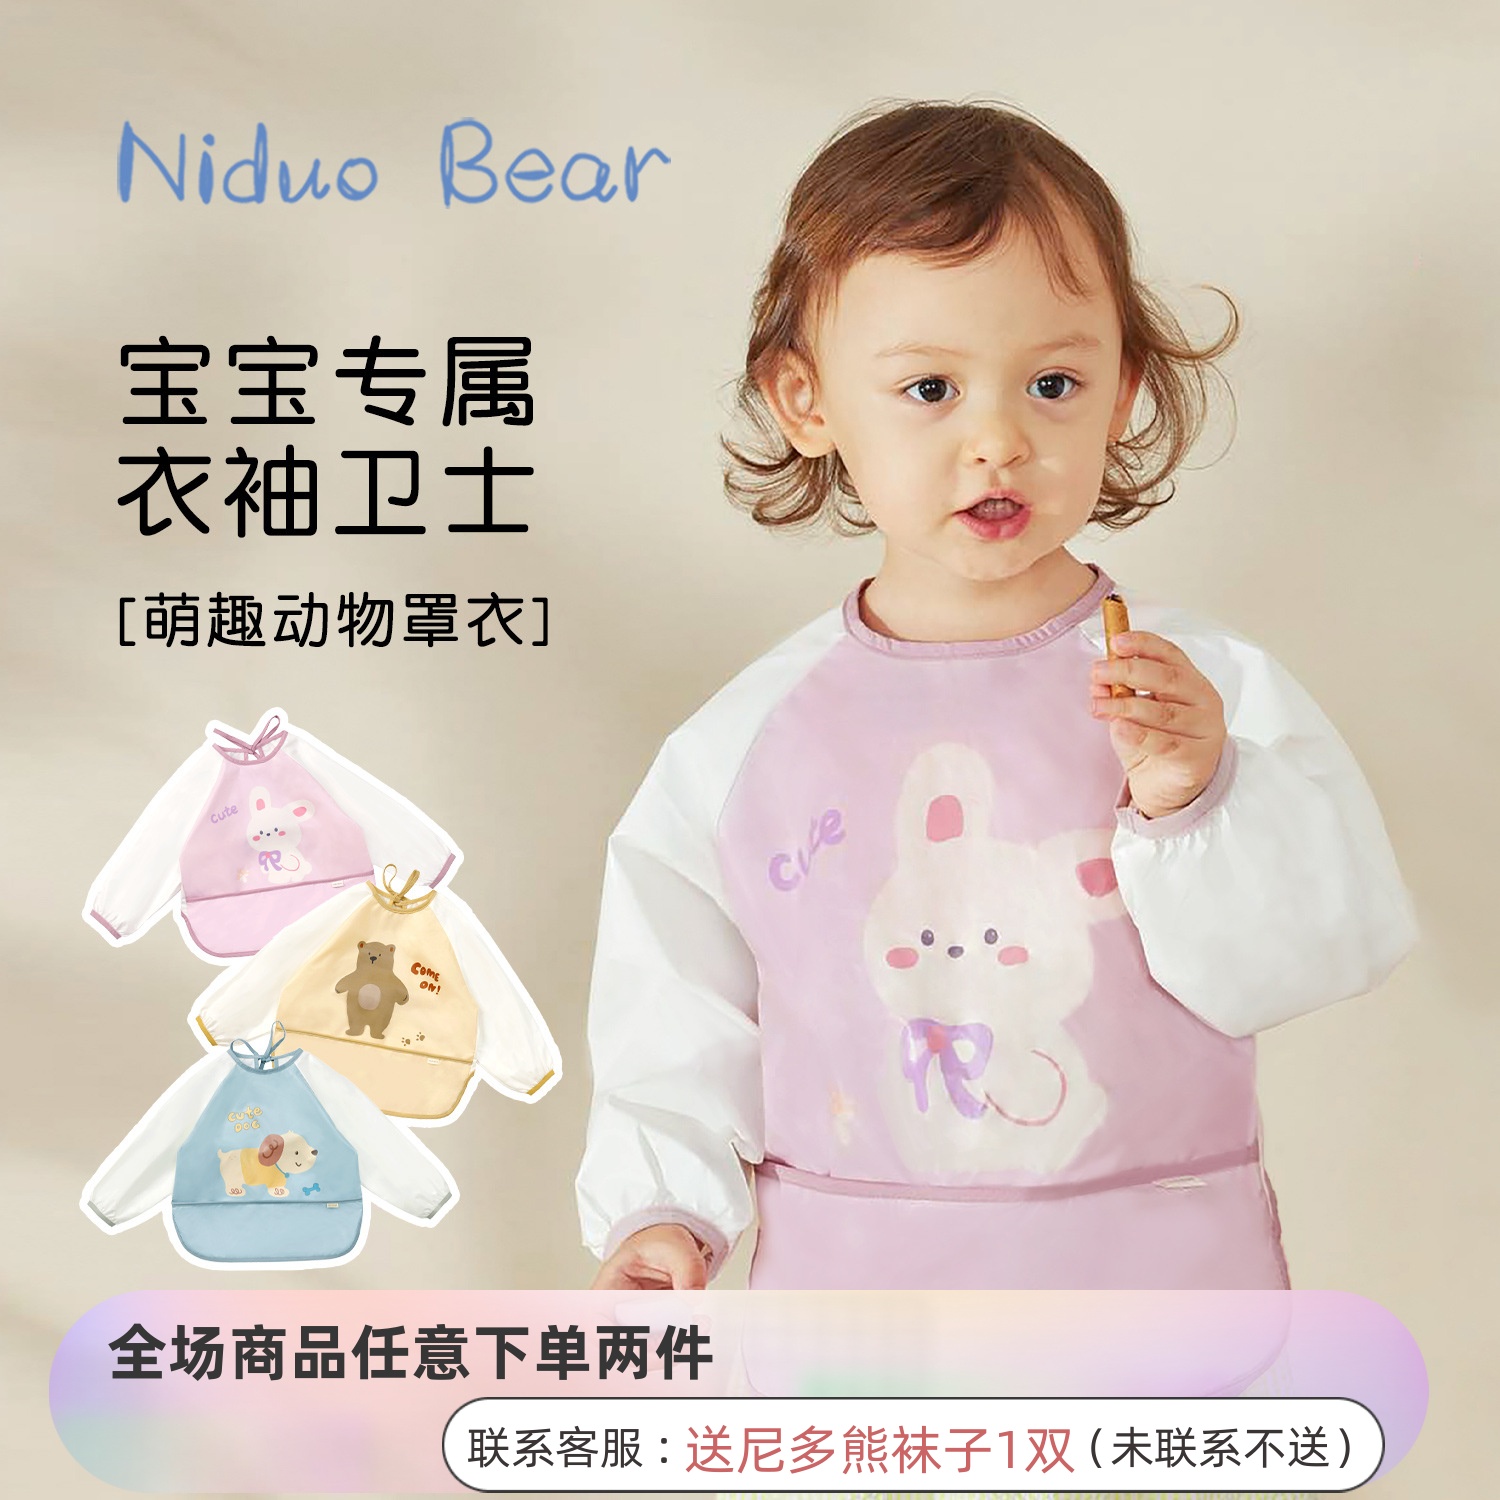 尼多熊男女宝宝吃饭罩衣儿童反穿衣婴儿围兜防水防脏围裙护衣饭兜